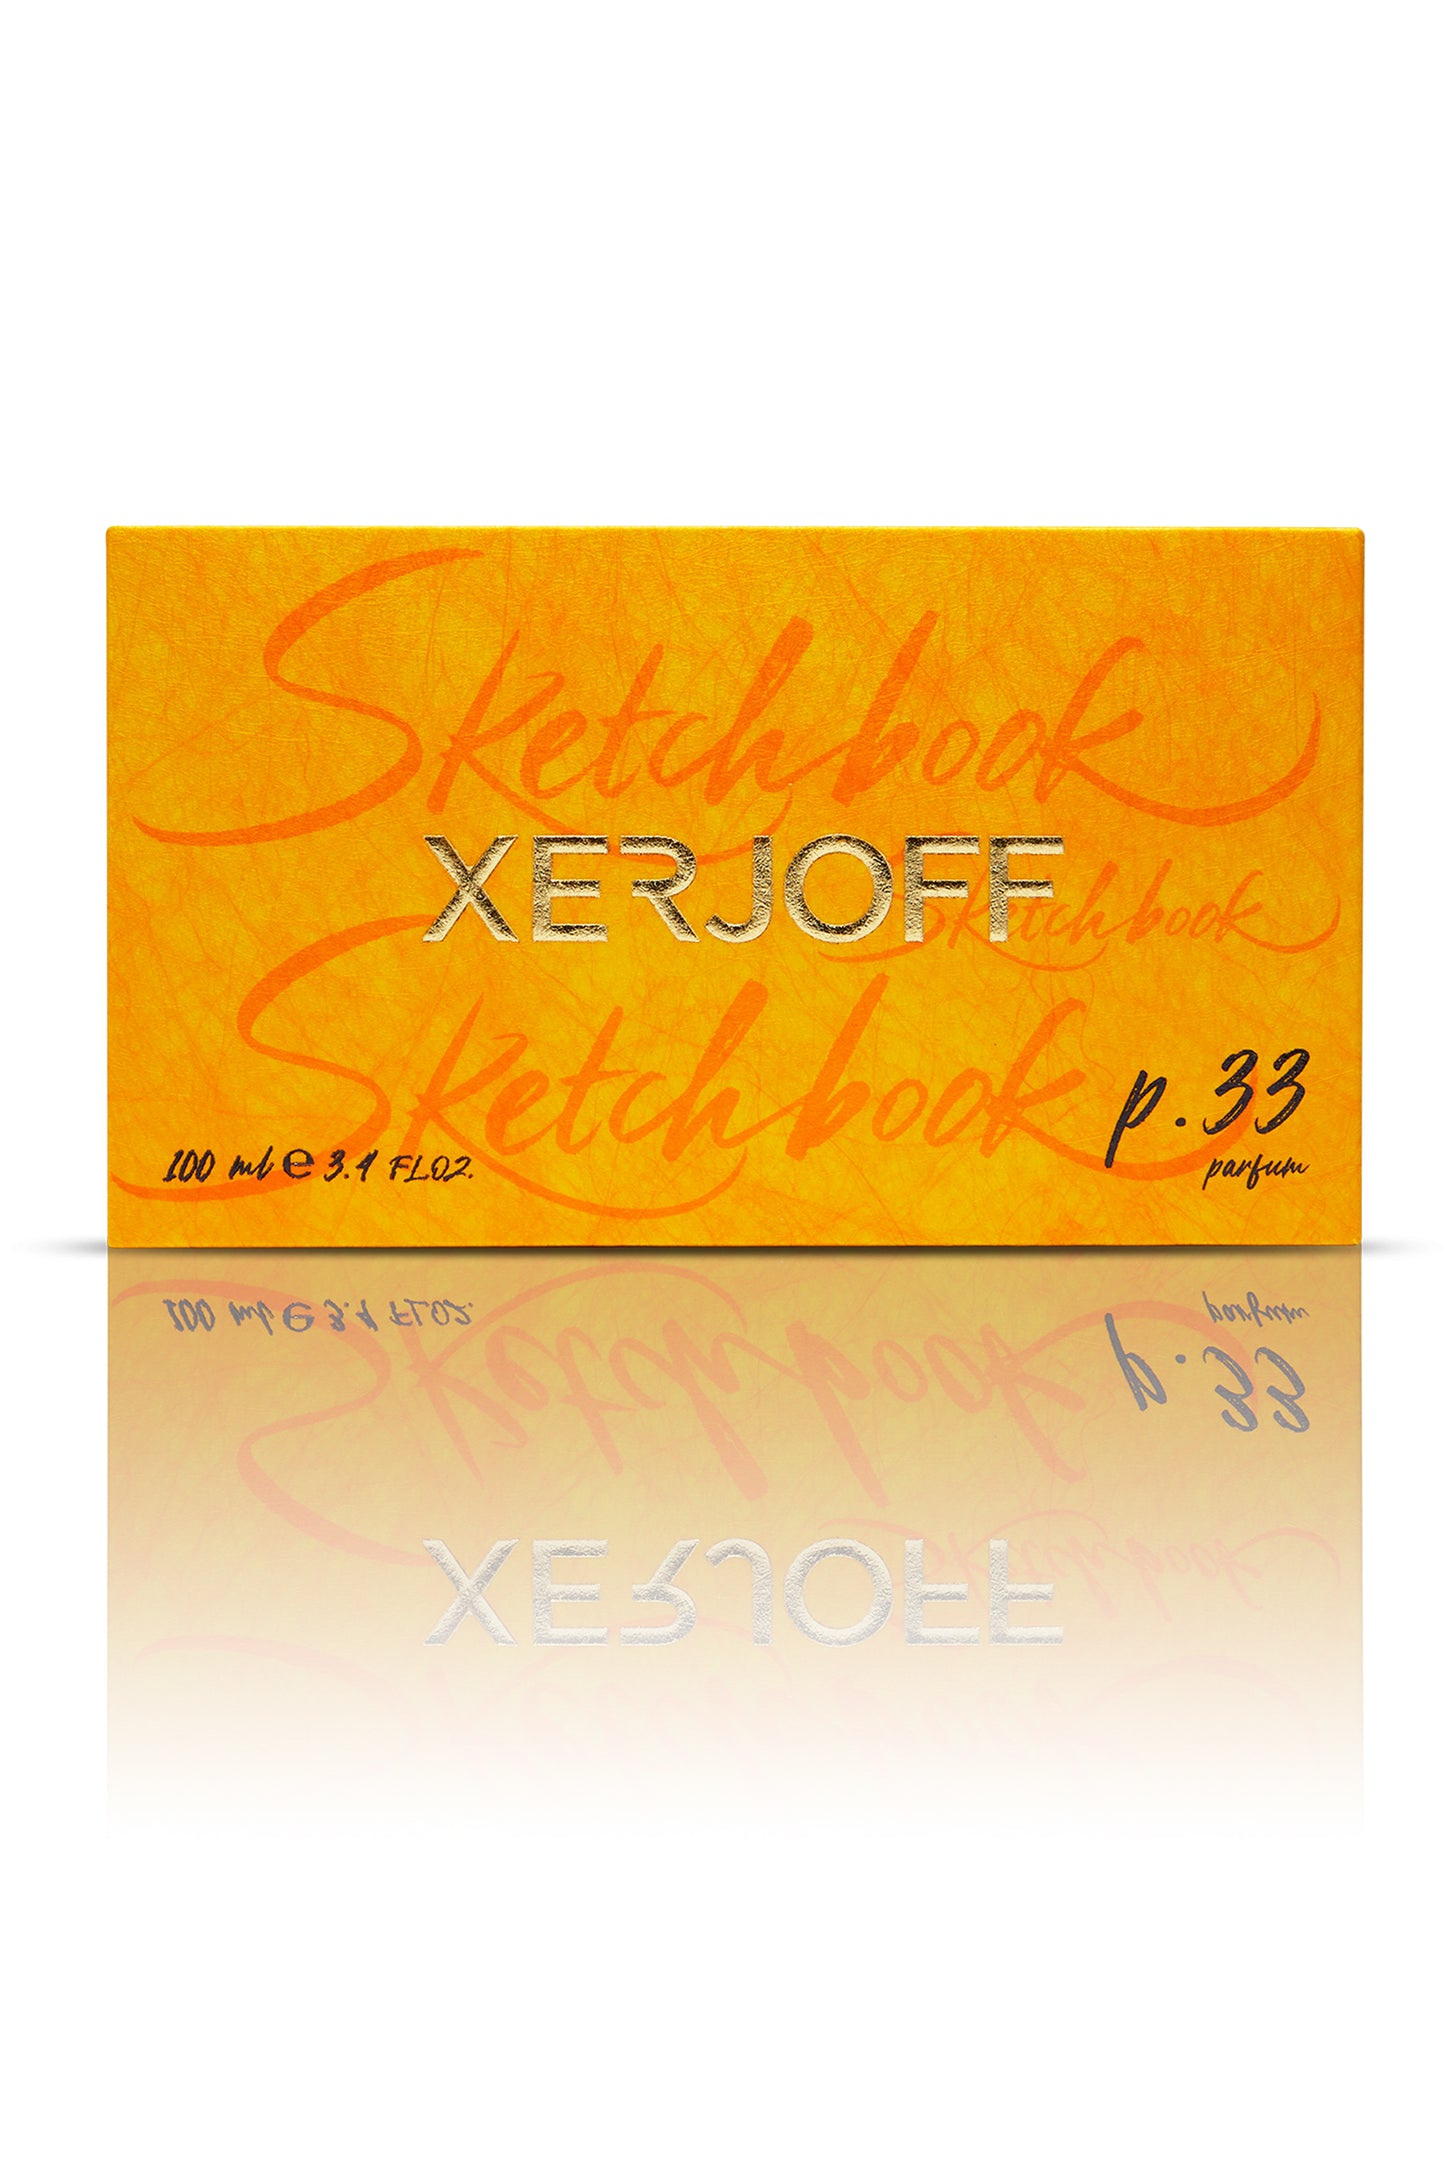 P.33 Sketchbook Xerjoff 100ml